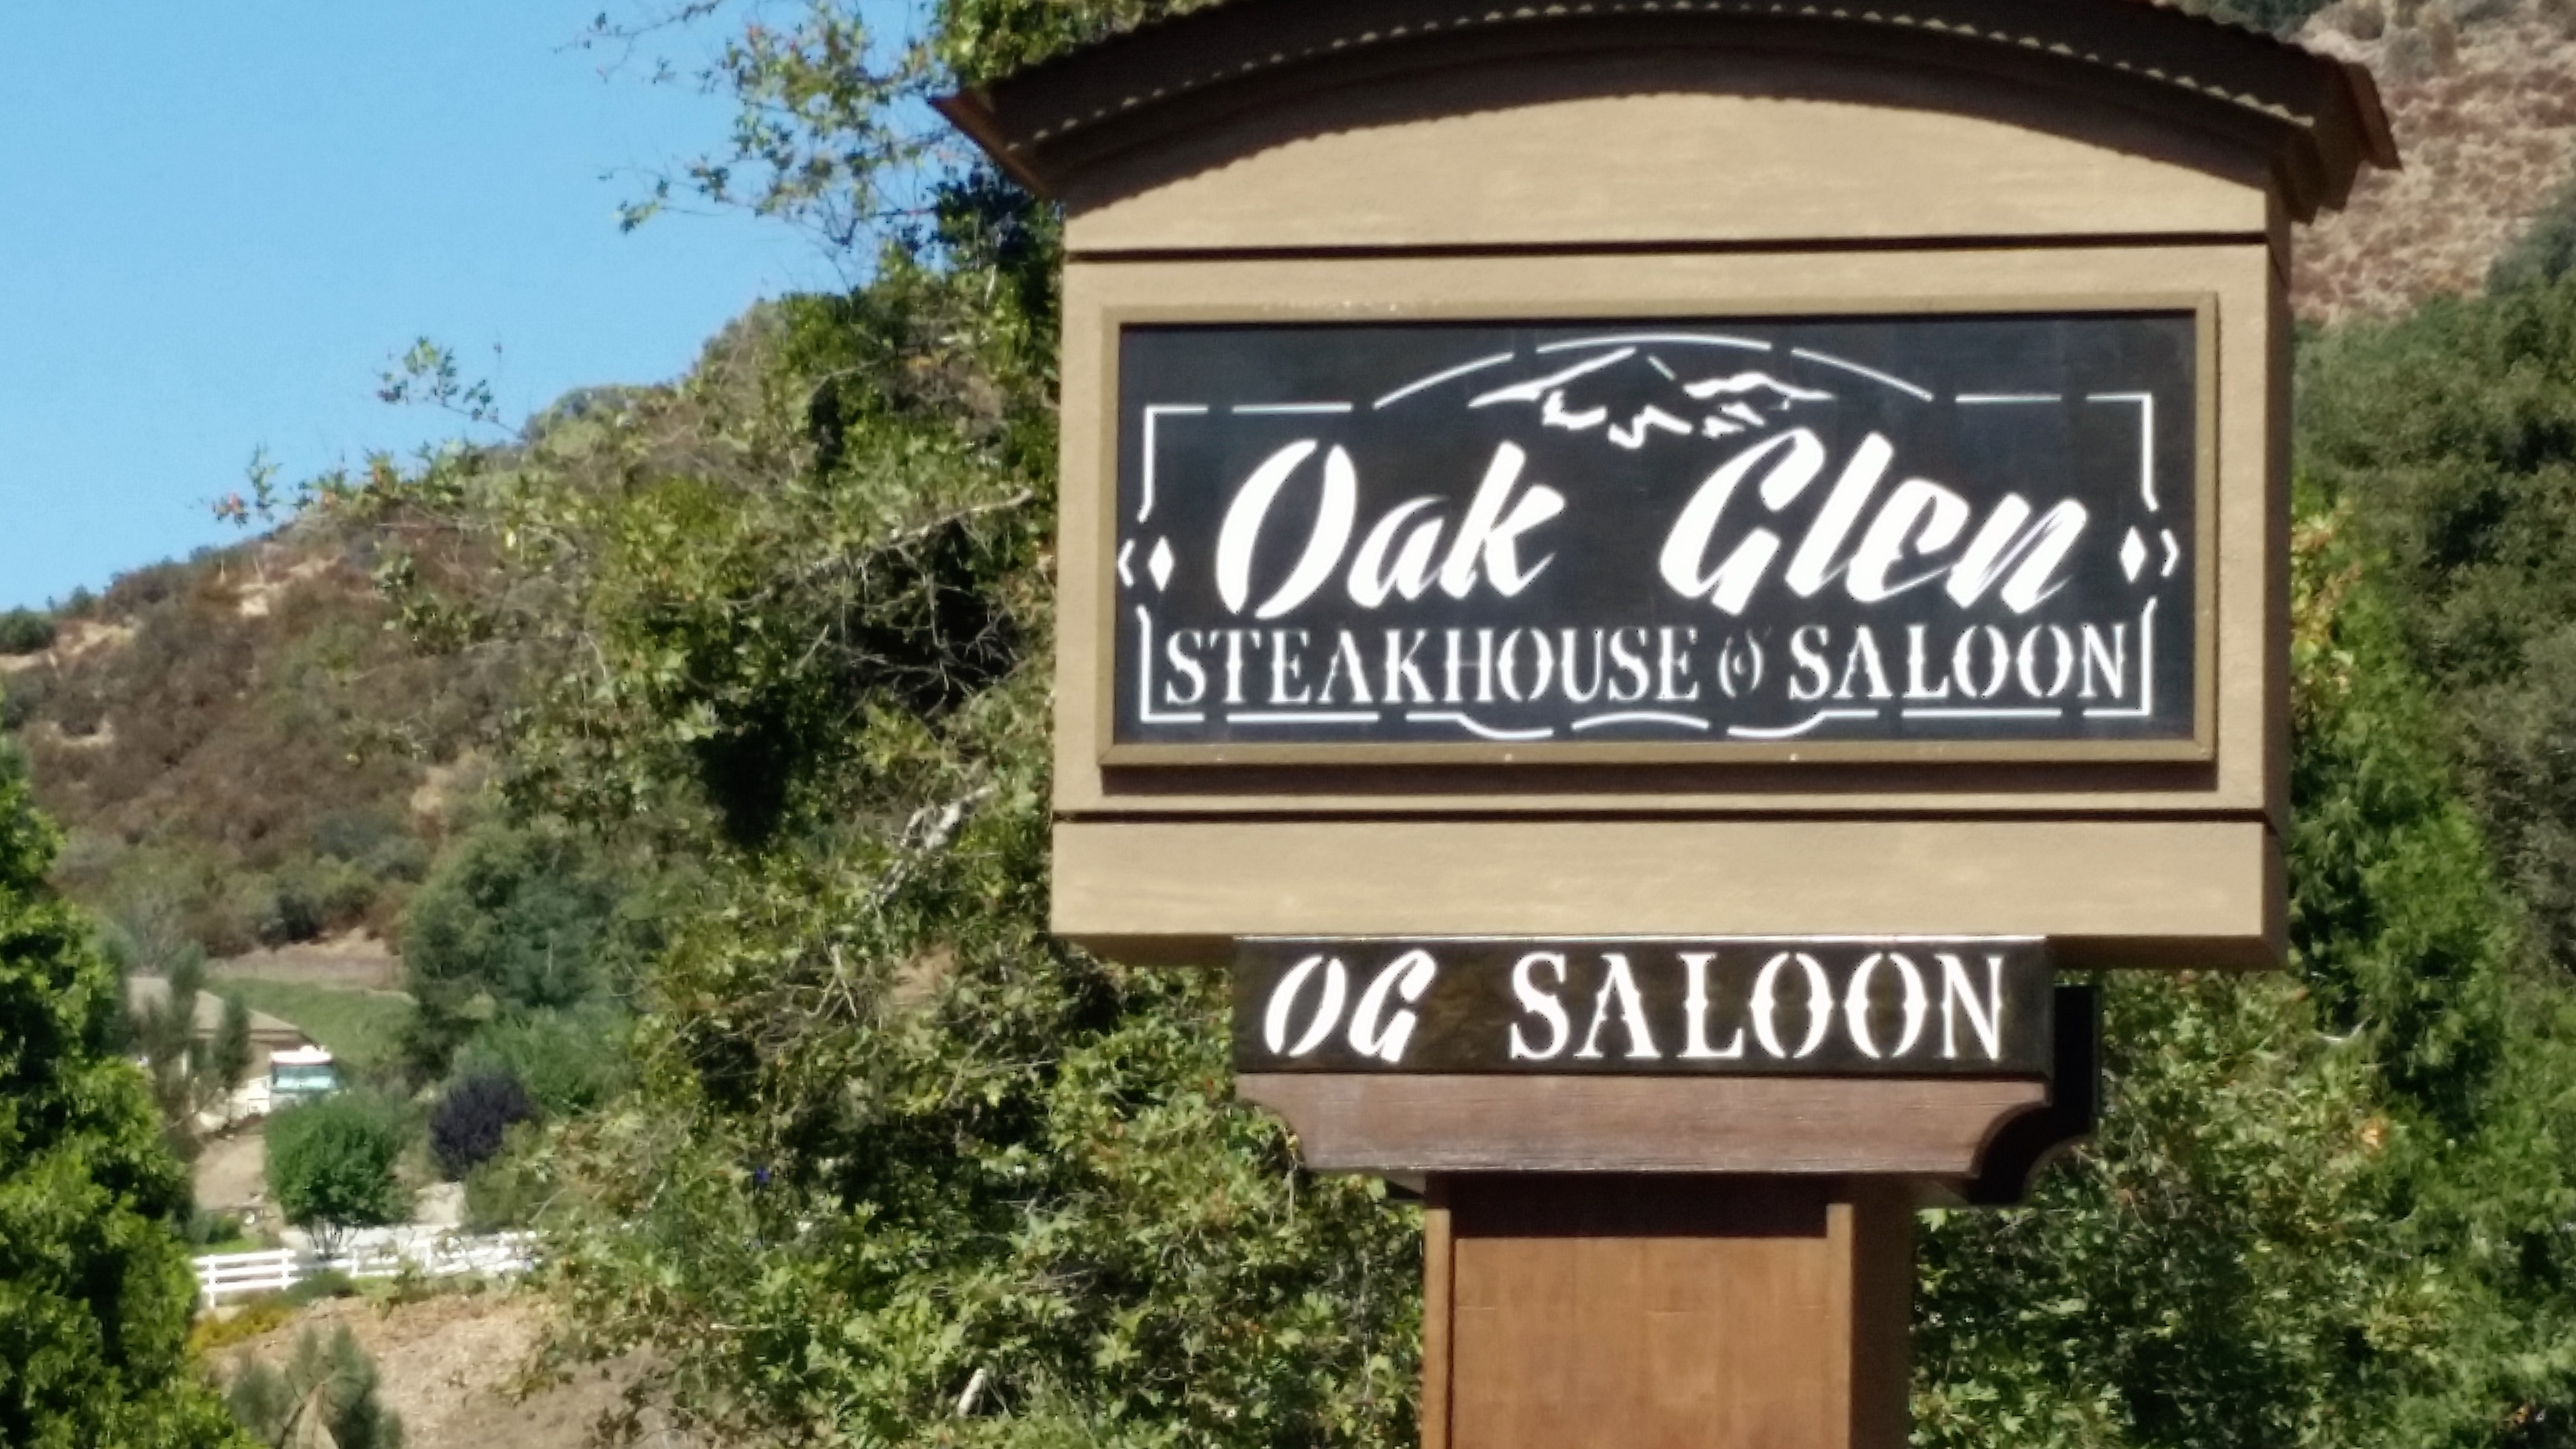 Oak_Glen_Steakhouse___Saloon__in_Oak_Glen__California.jpg